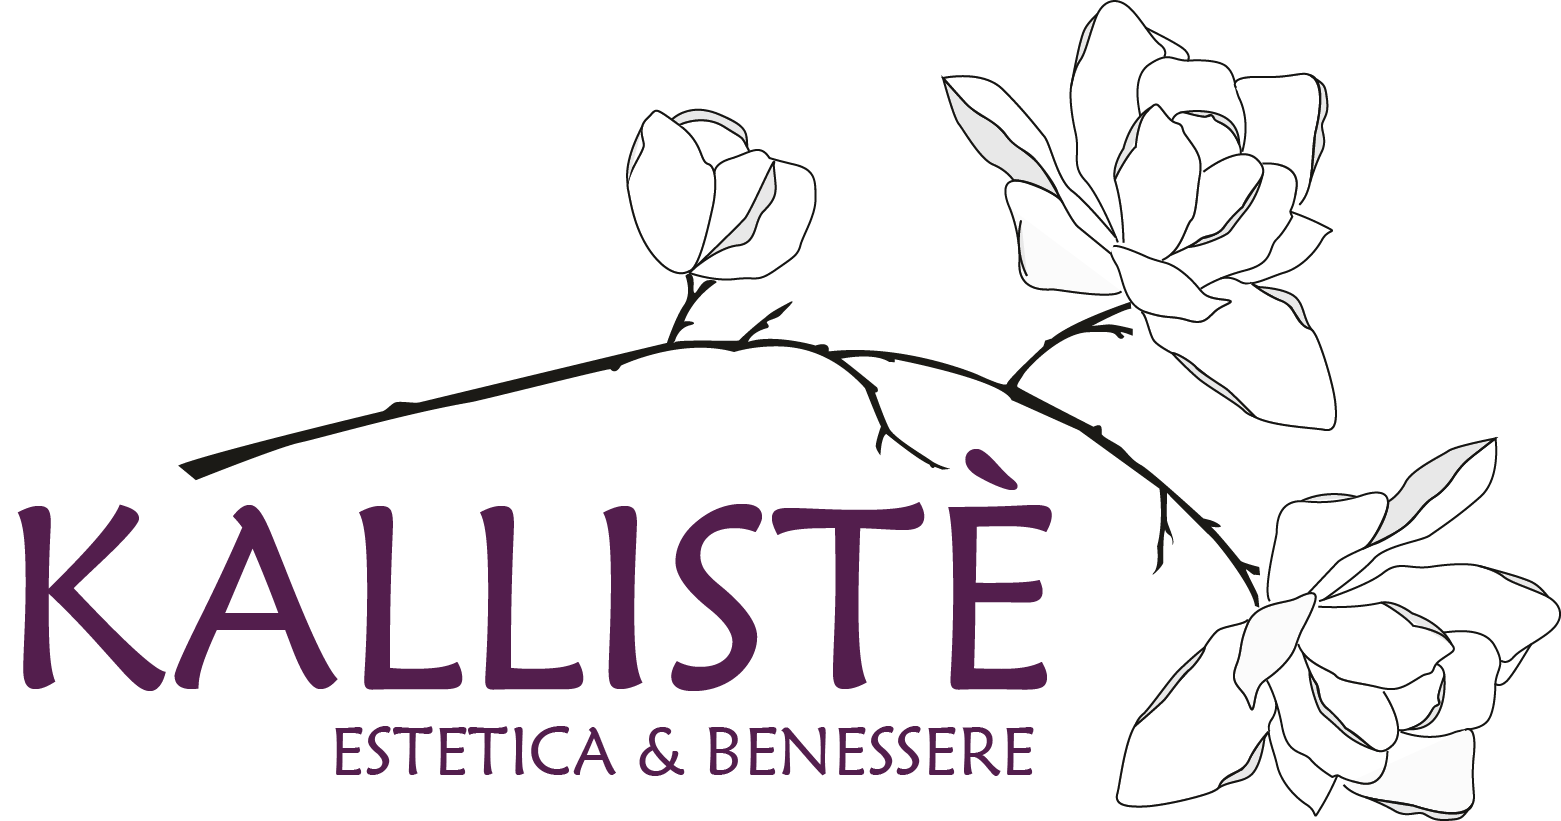 Estetica Kallistè - Estetica & benessere